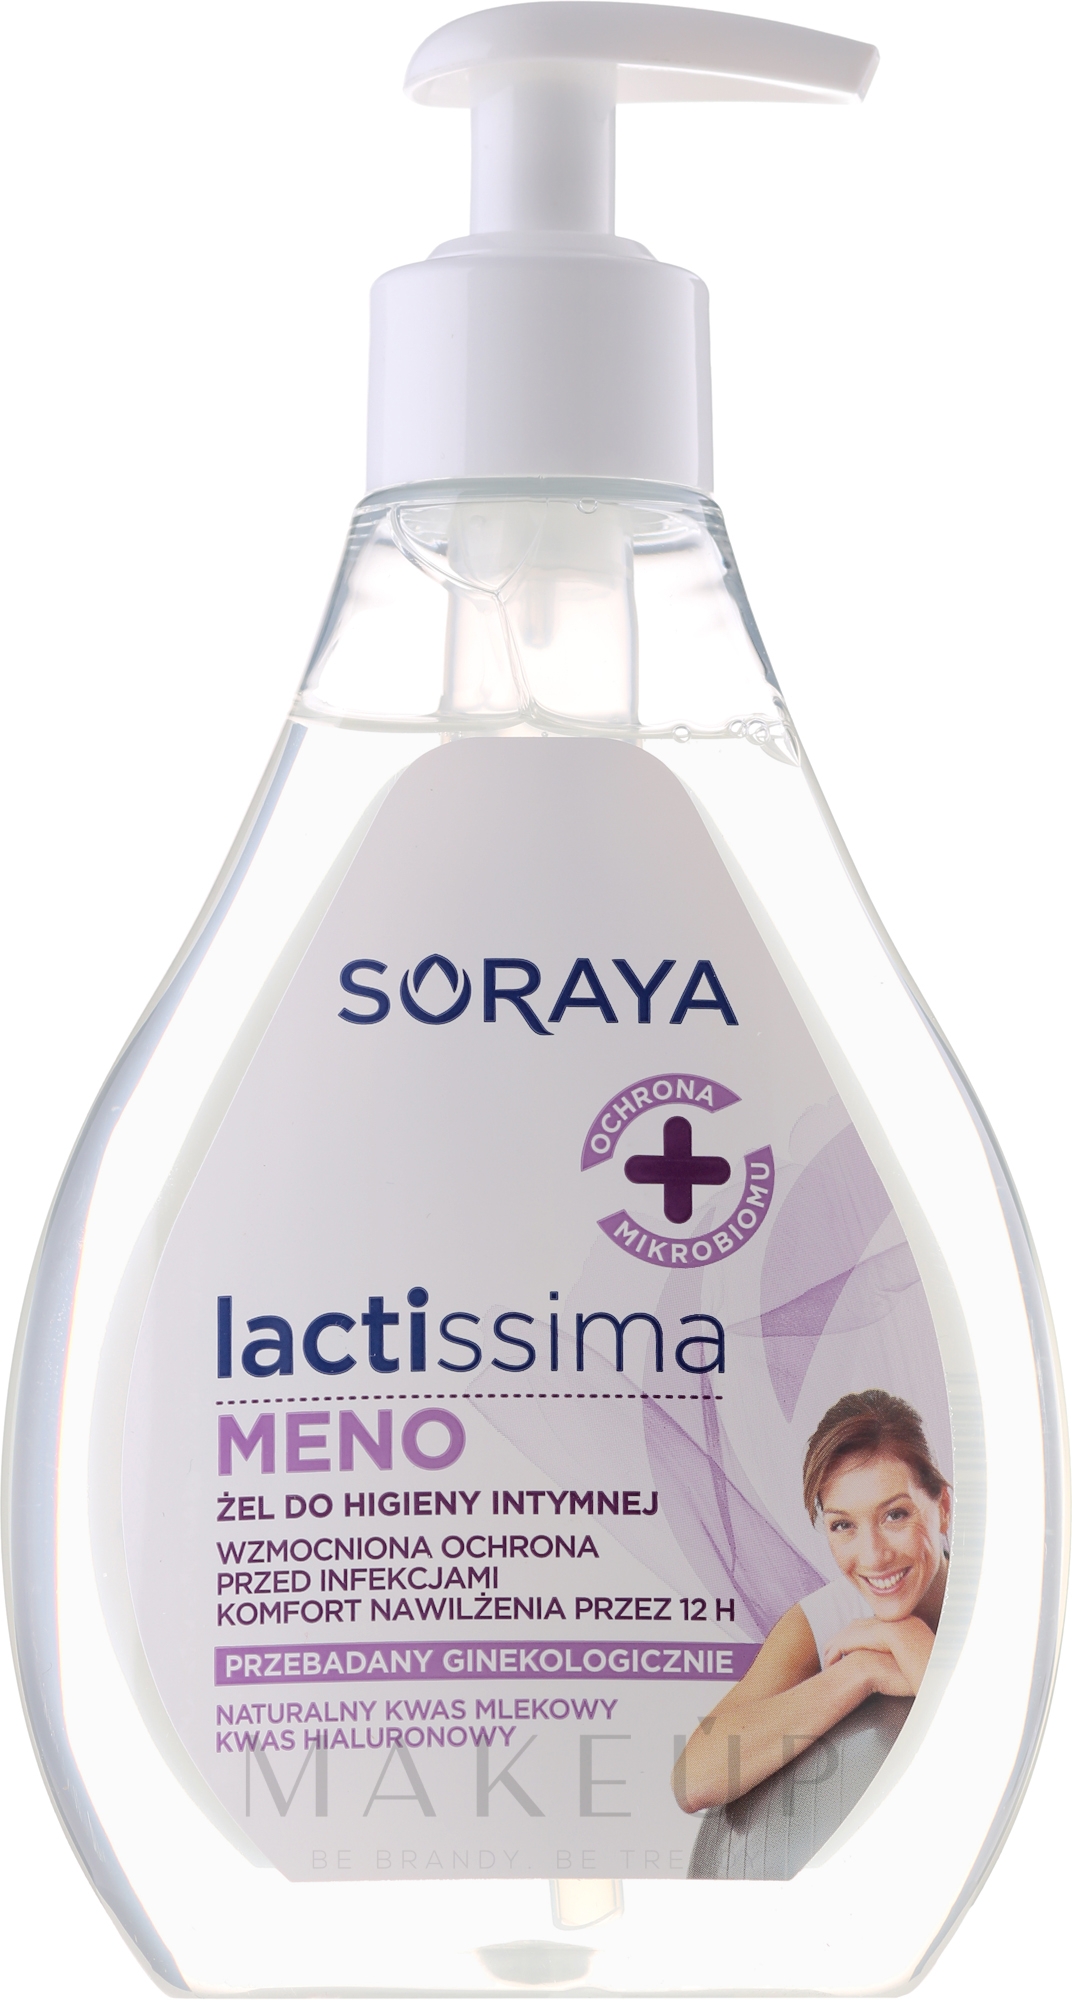 Emulsion für die Intimhygiene in der Menopause - Soraya Lactissima Menopauza Emulsion For Intimate Hygiene — Bild 300 ml